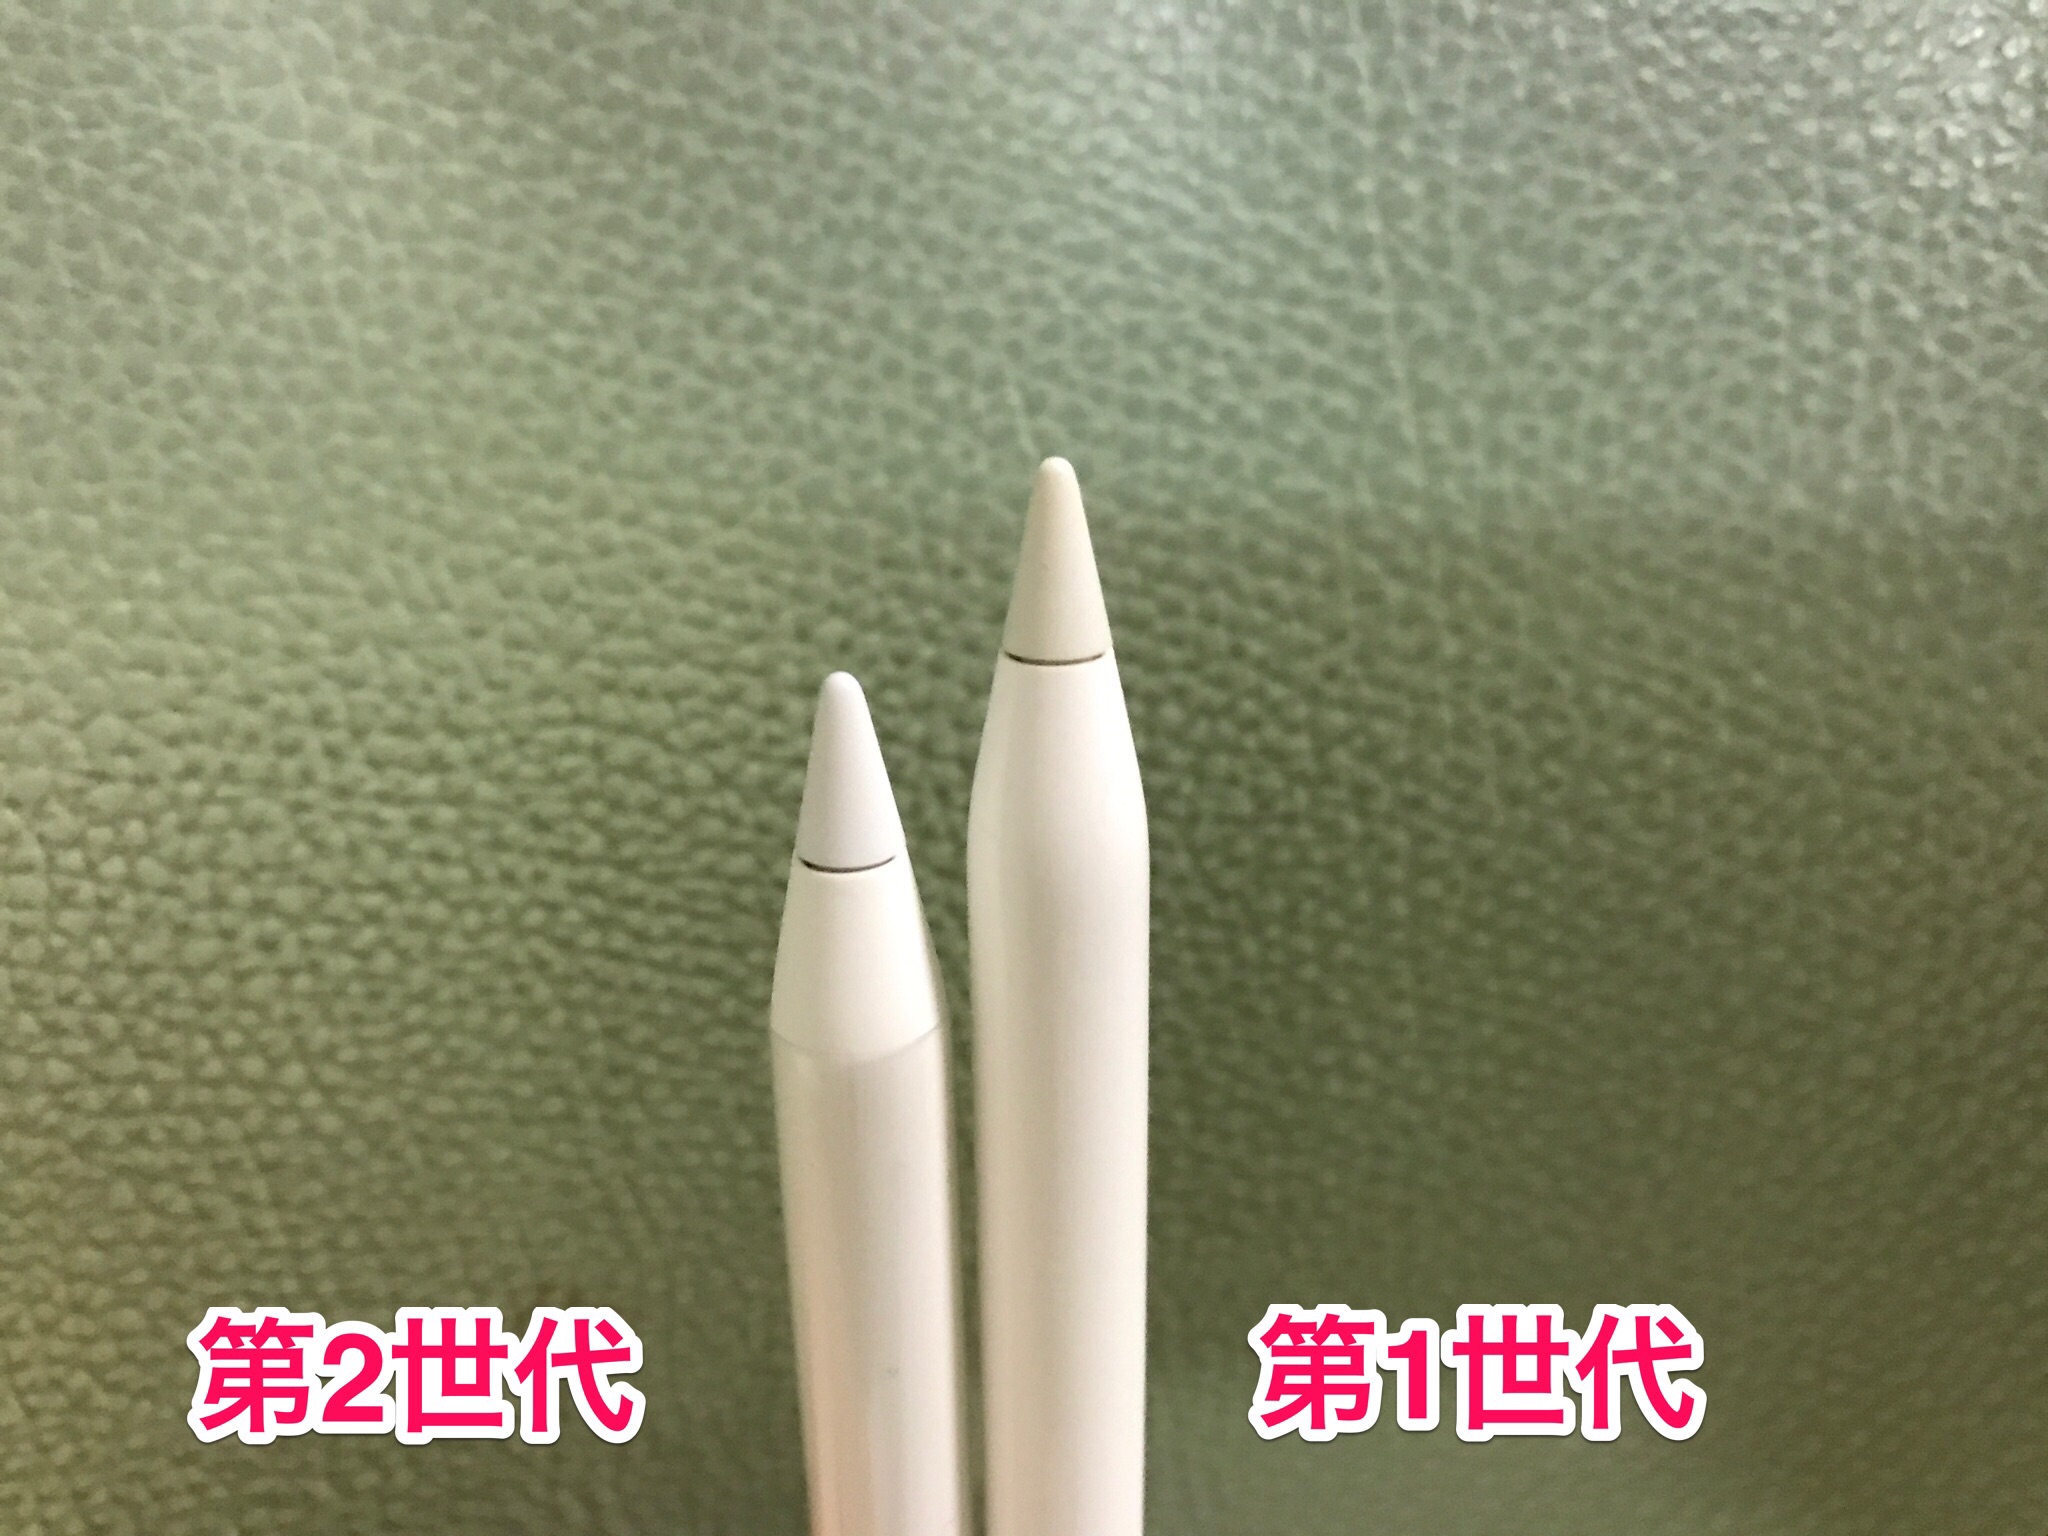 新作国産 Apple Pencil 第2世代 KkC7B-m52342823607 actualizate.ar